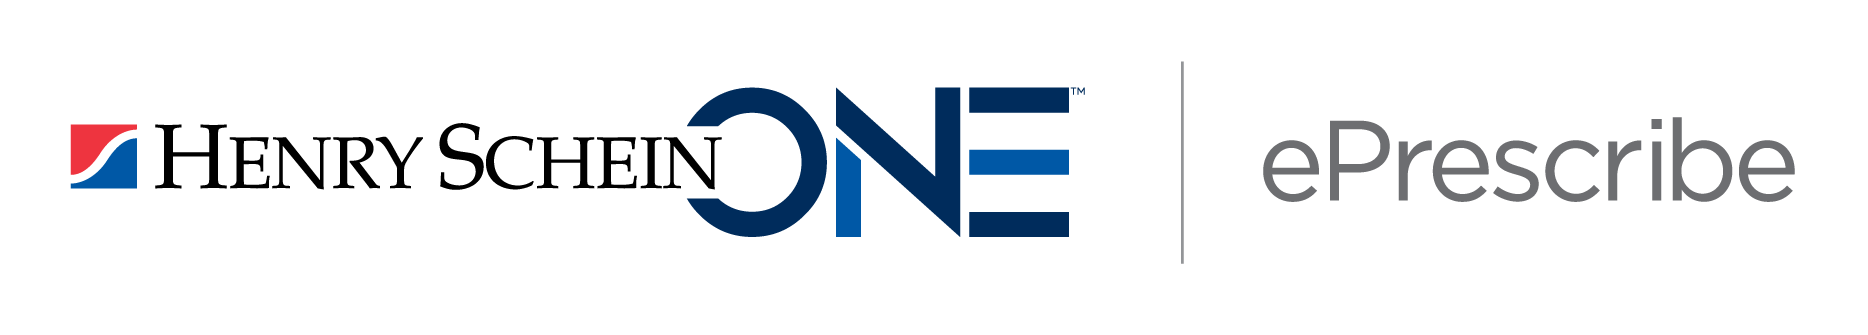 ePrescribe Logo